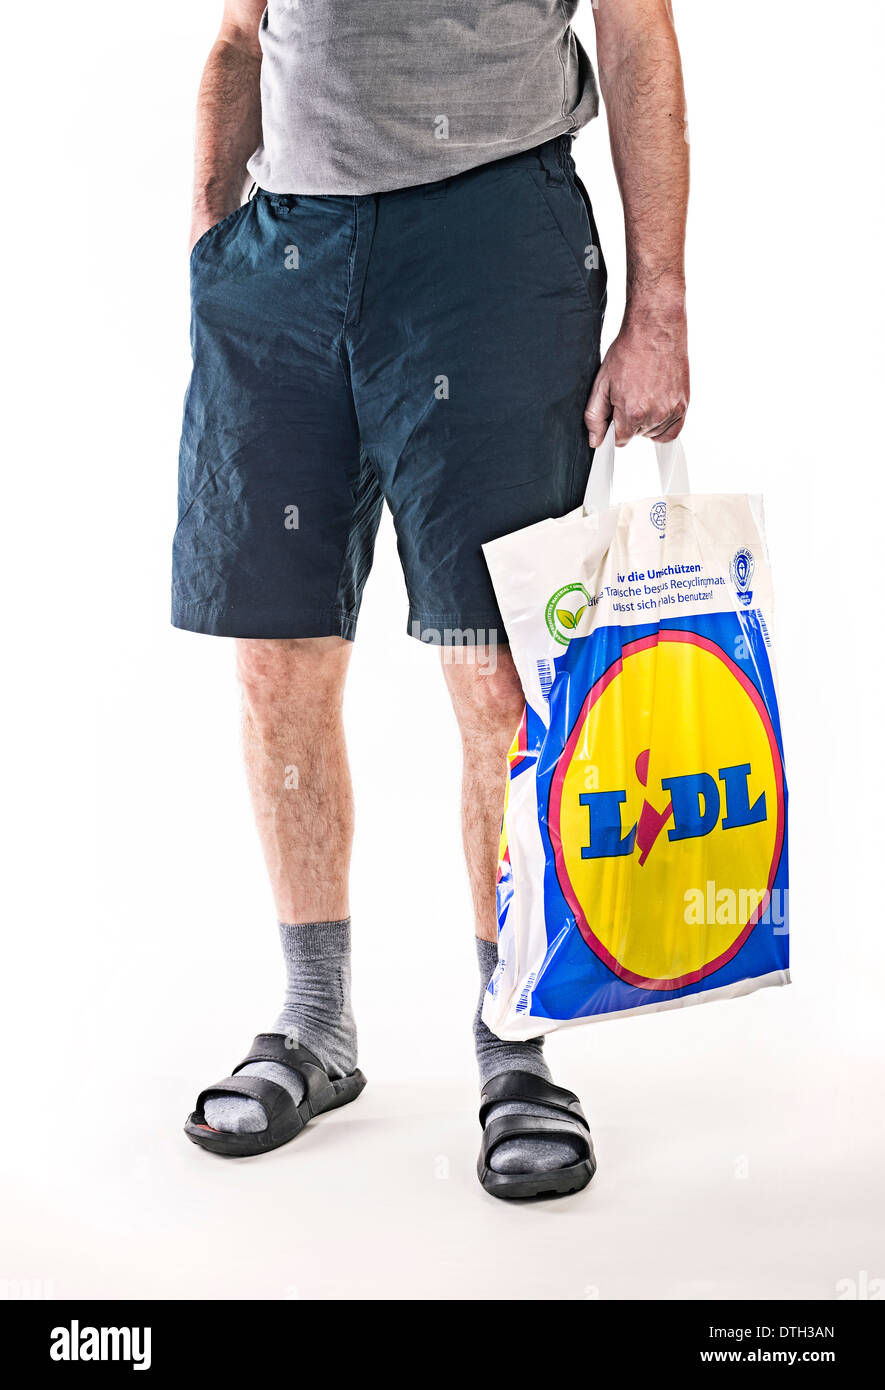 La partie inférieure du corps d'un homme avec le pantalon court, portant un  sac en plastique de l'escompteur alimentaire Lidl Photo Stock - Alamy